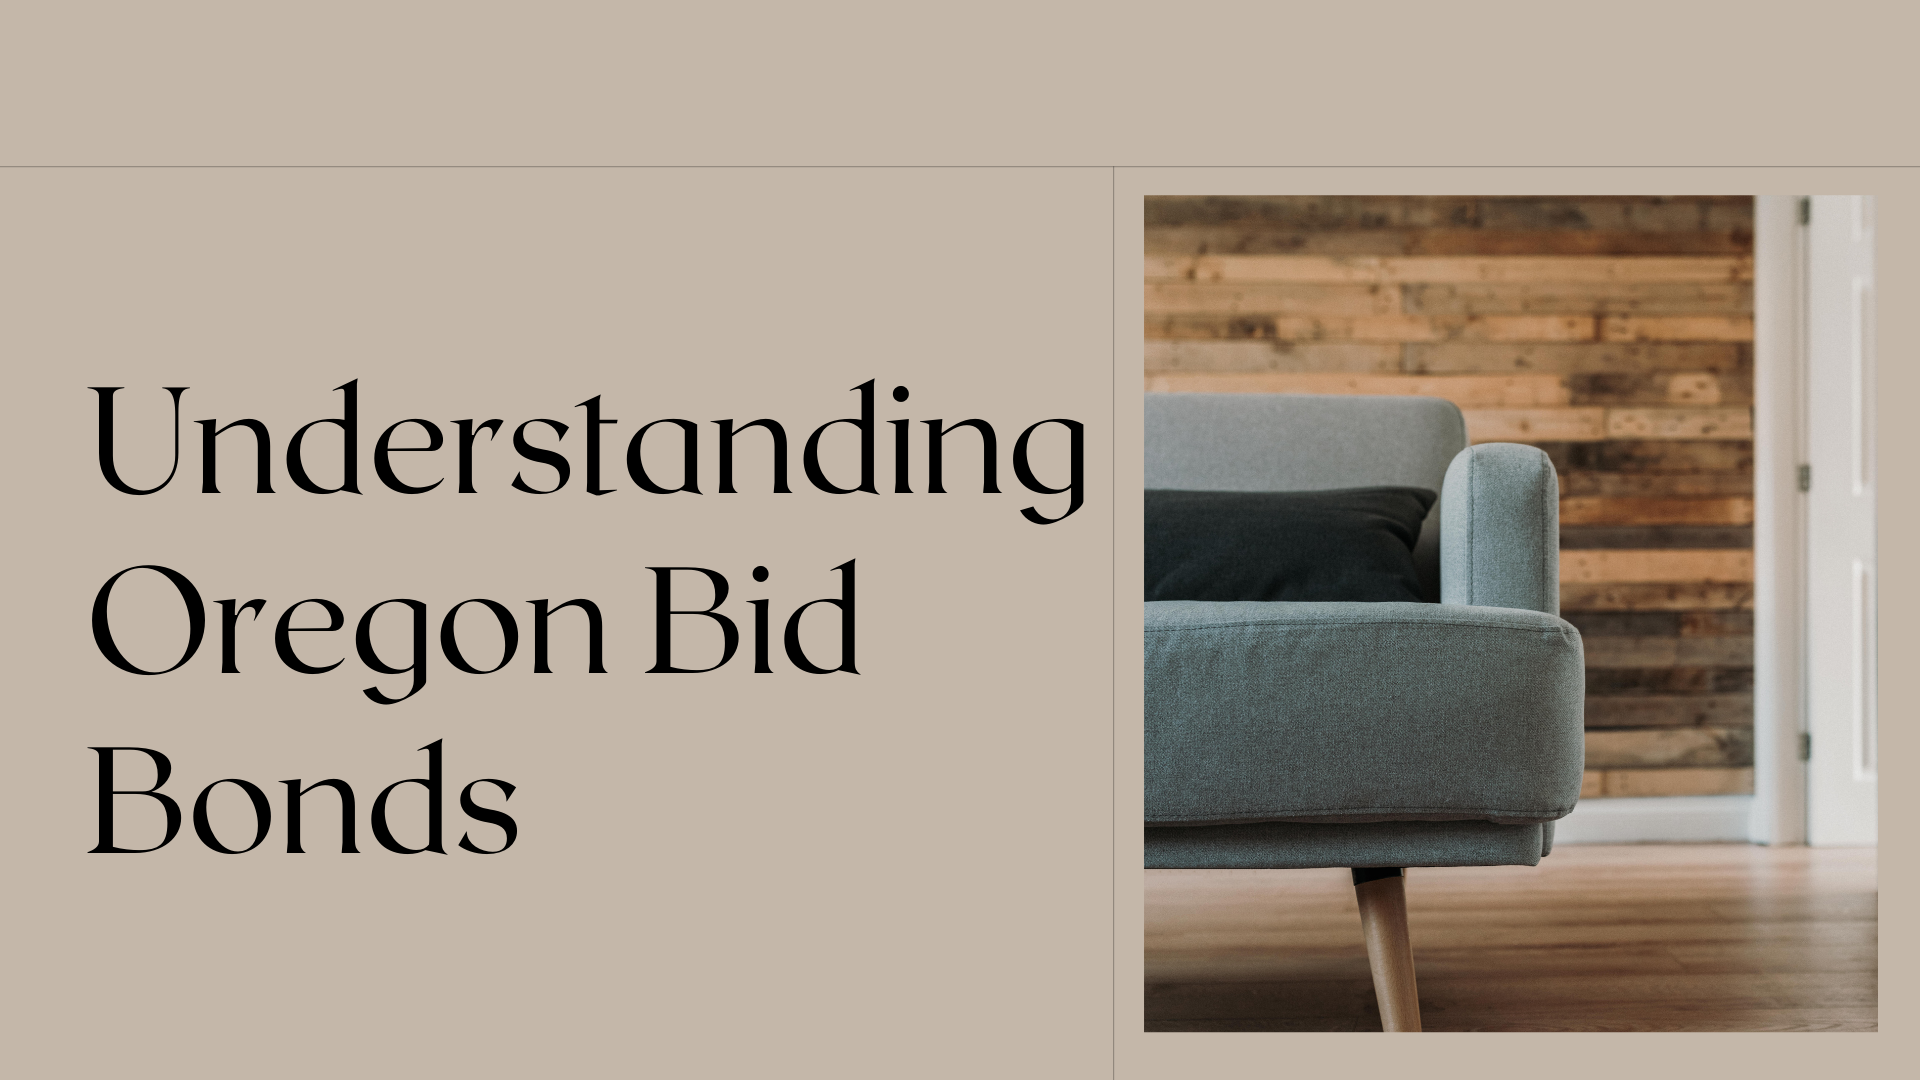 bid bonds - What Is a bid bond - minimalism